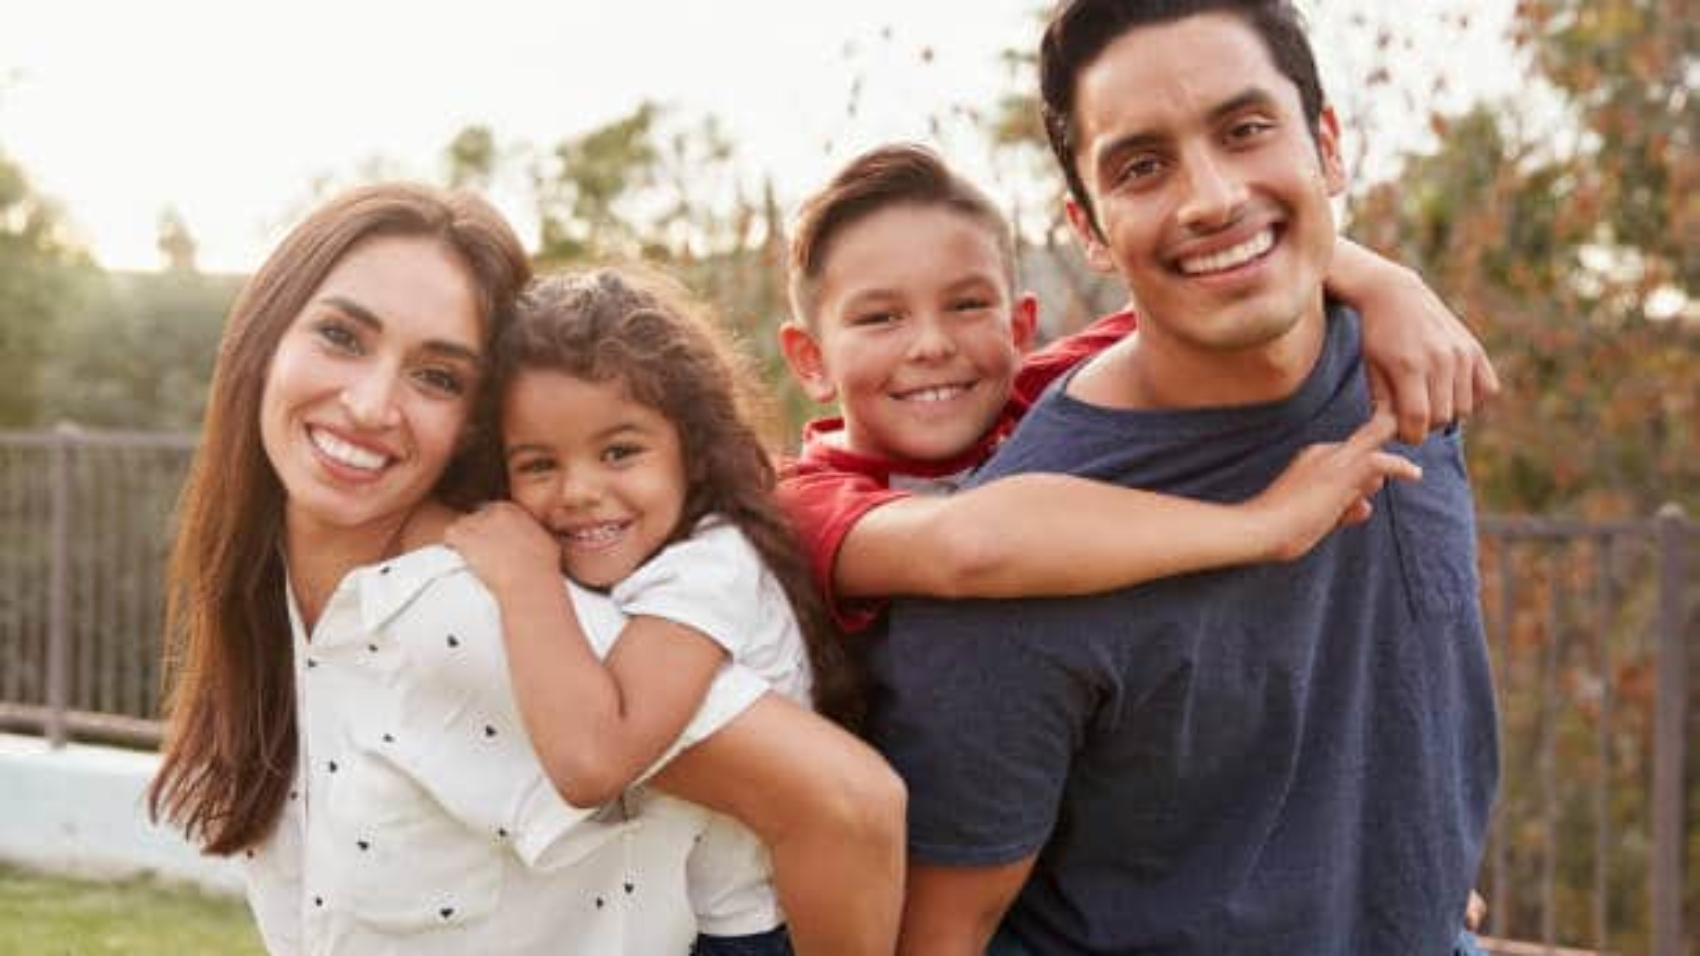 Latino family photo of four